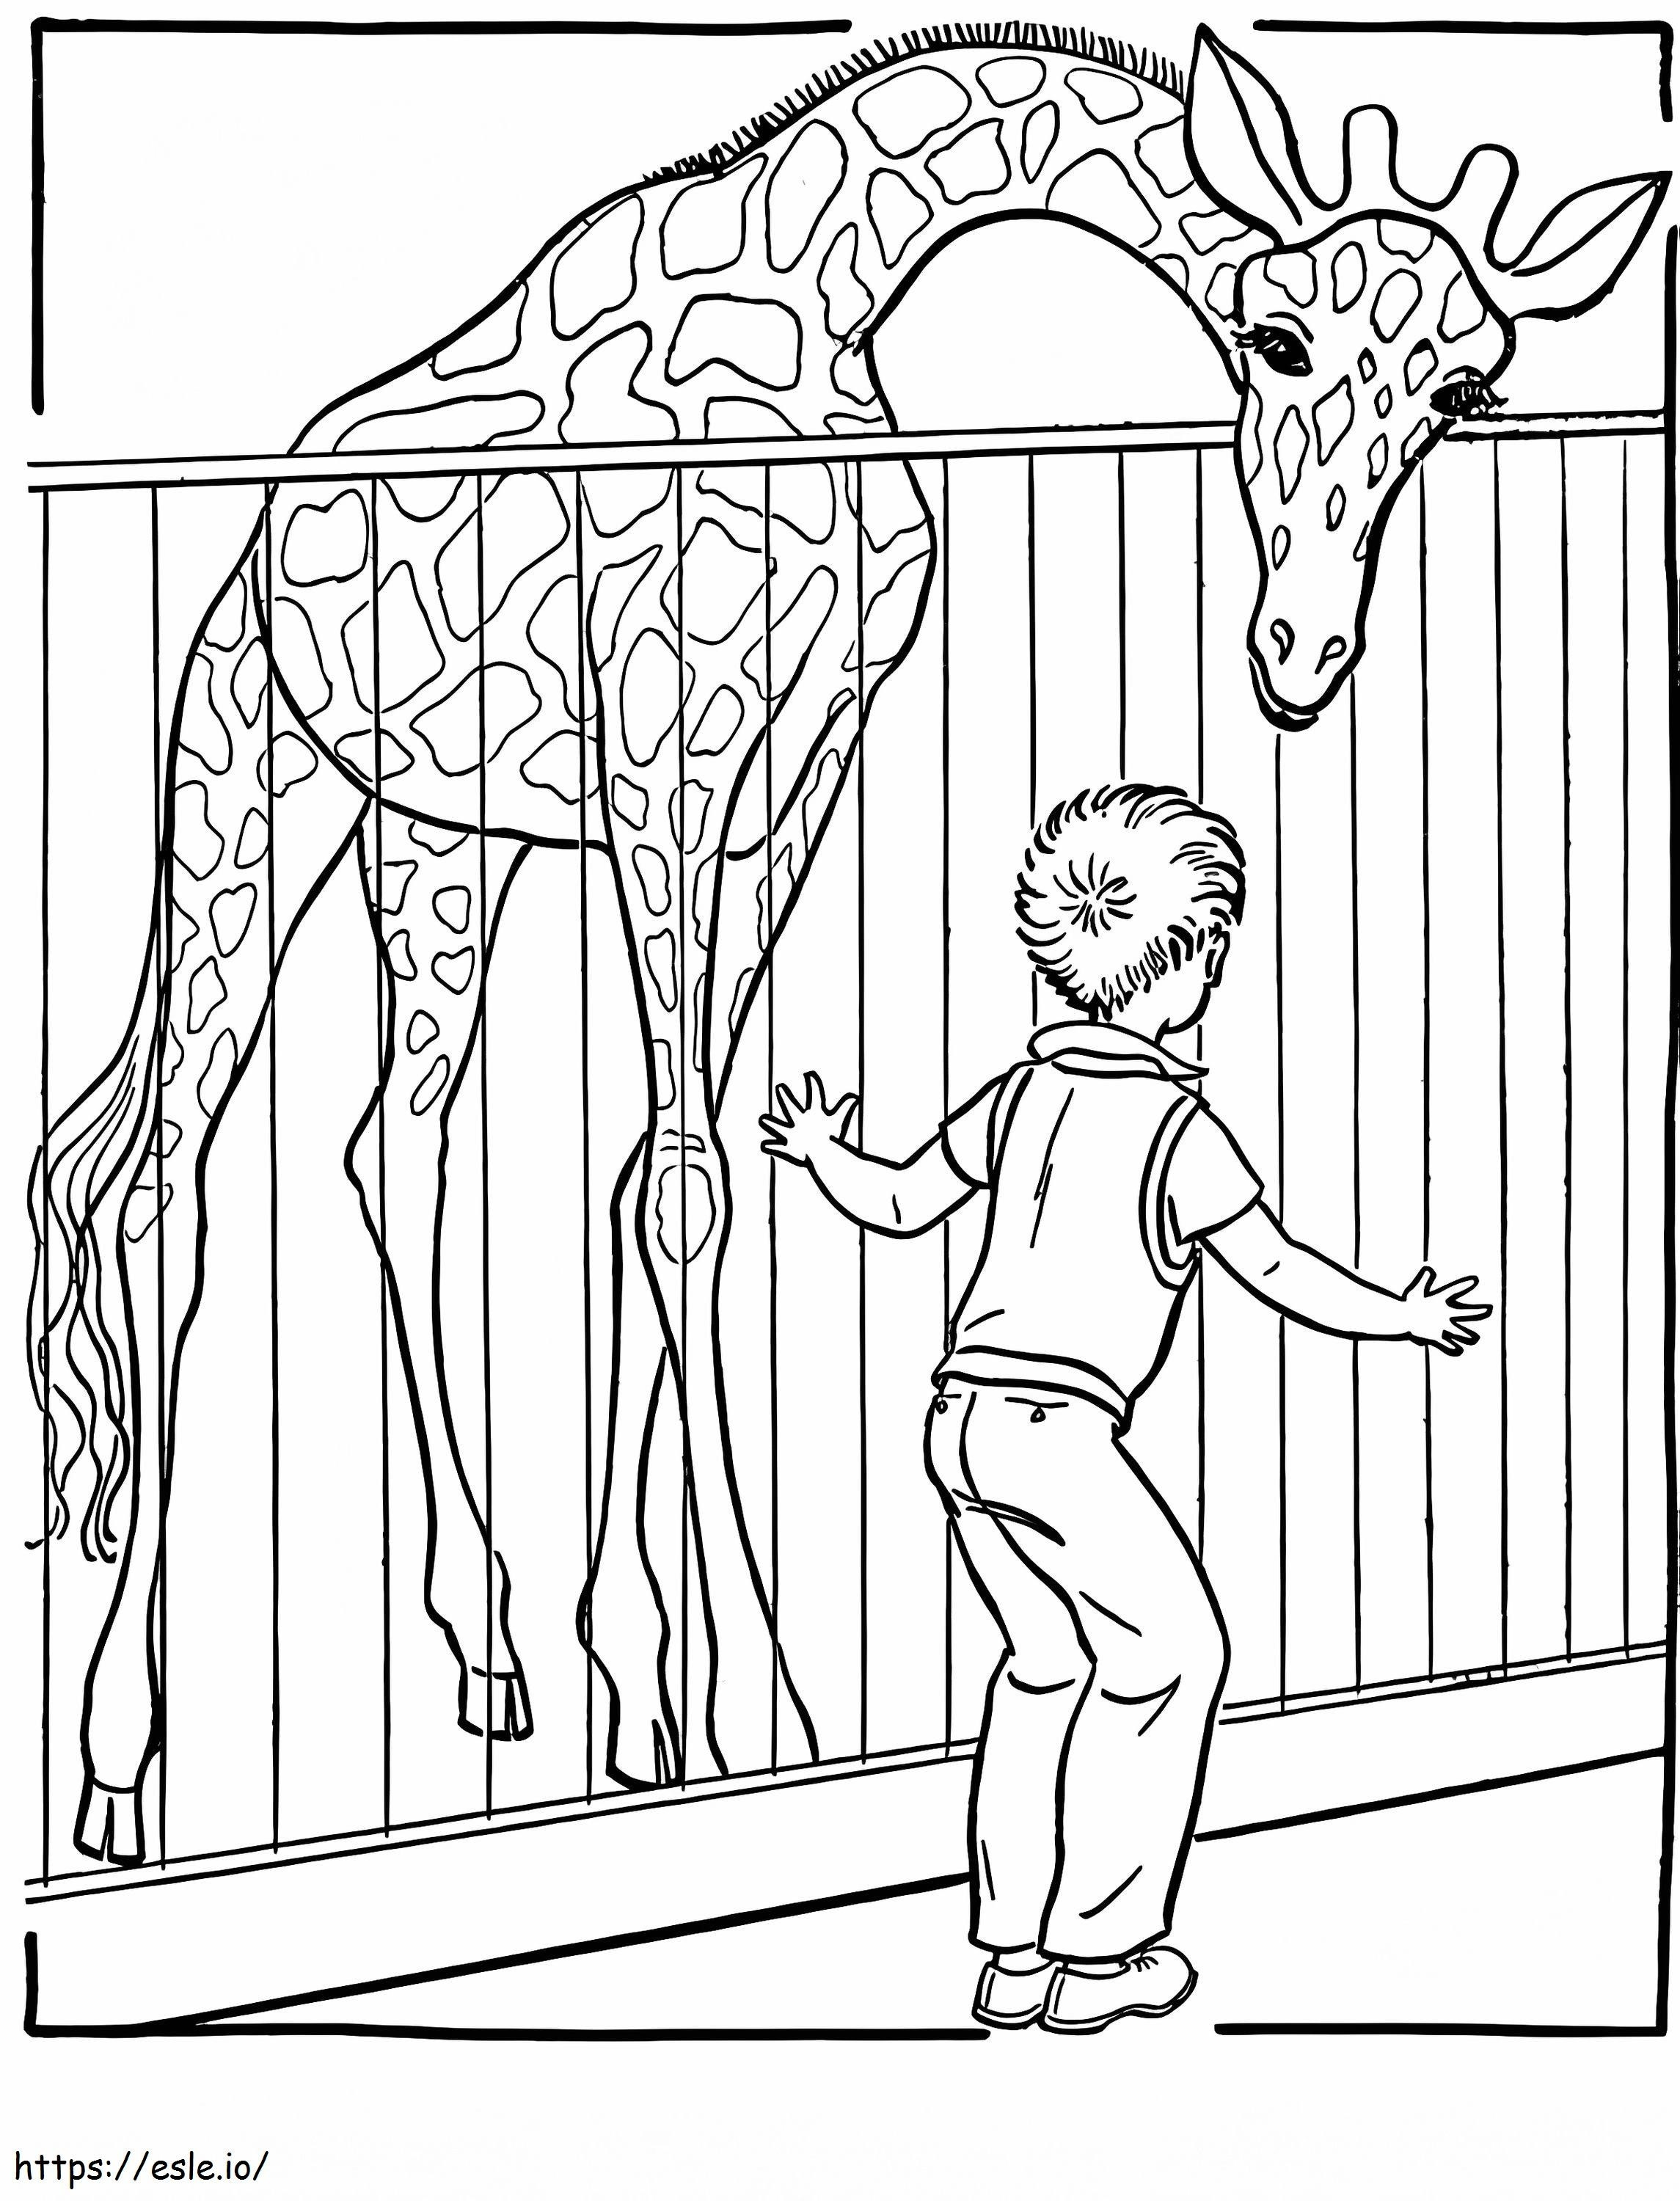 Giraffe und Kind des Zoos ausmalbilder